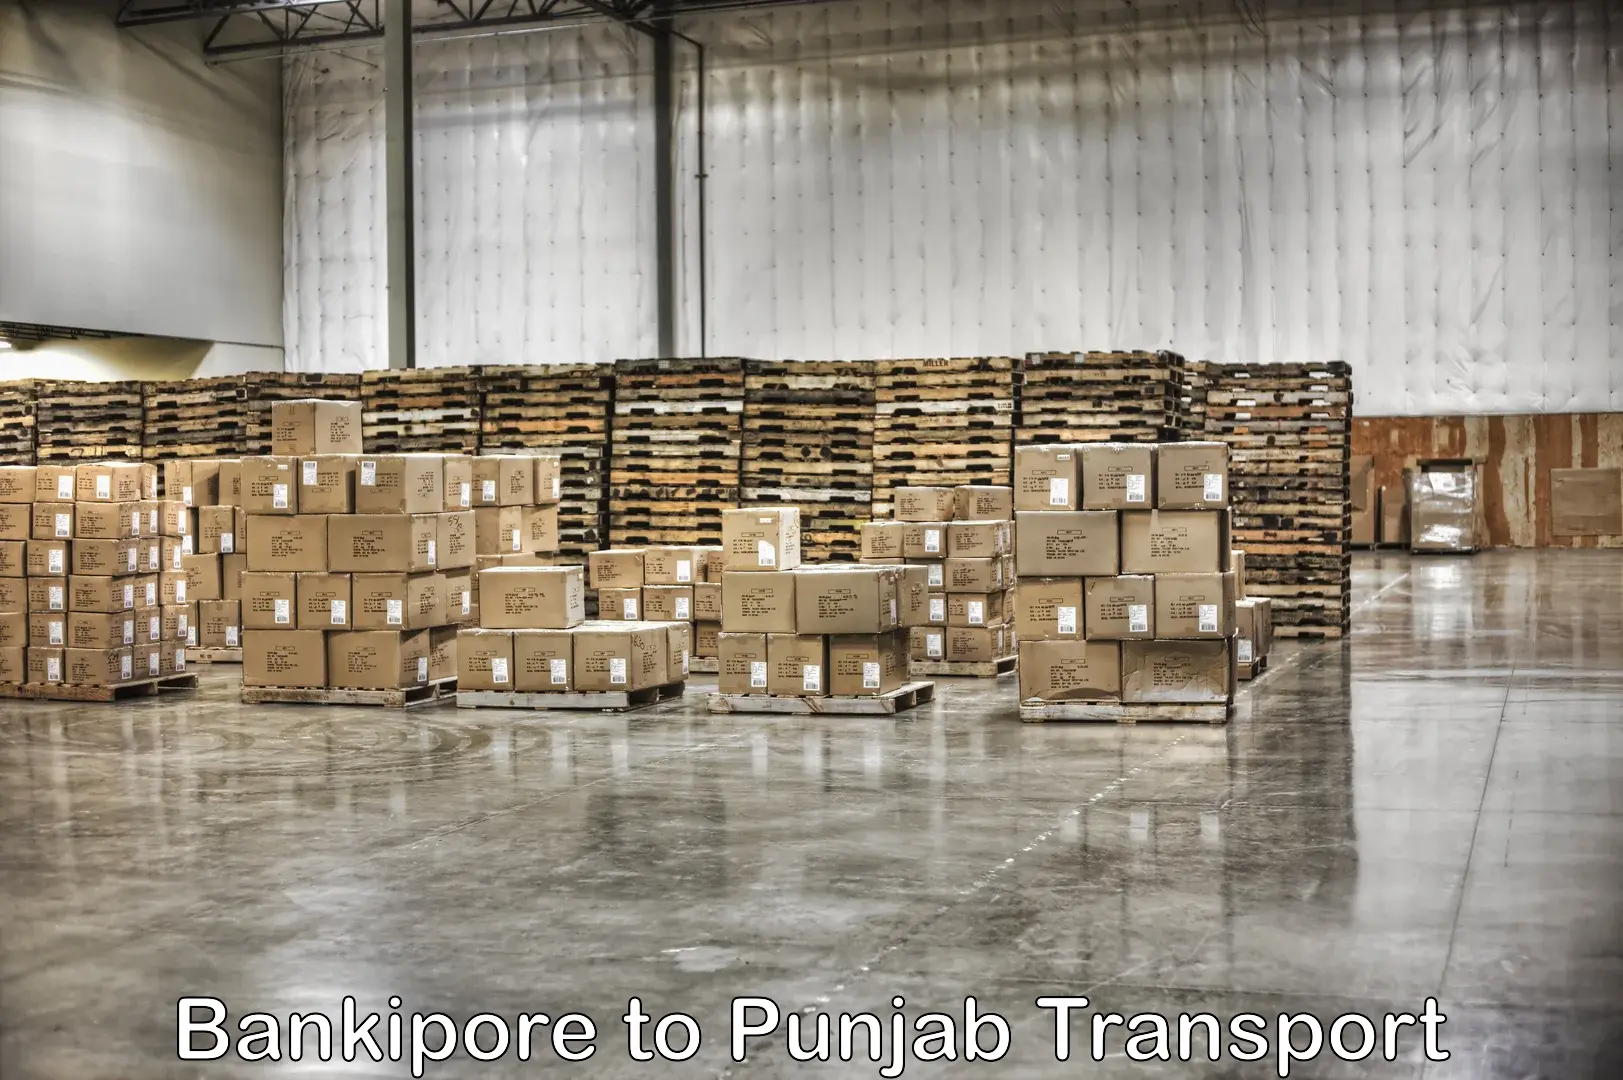 Lorry transport service Bankipore to Kotkapura